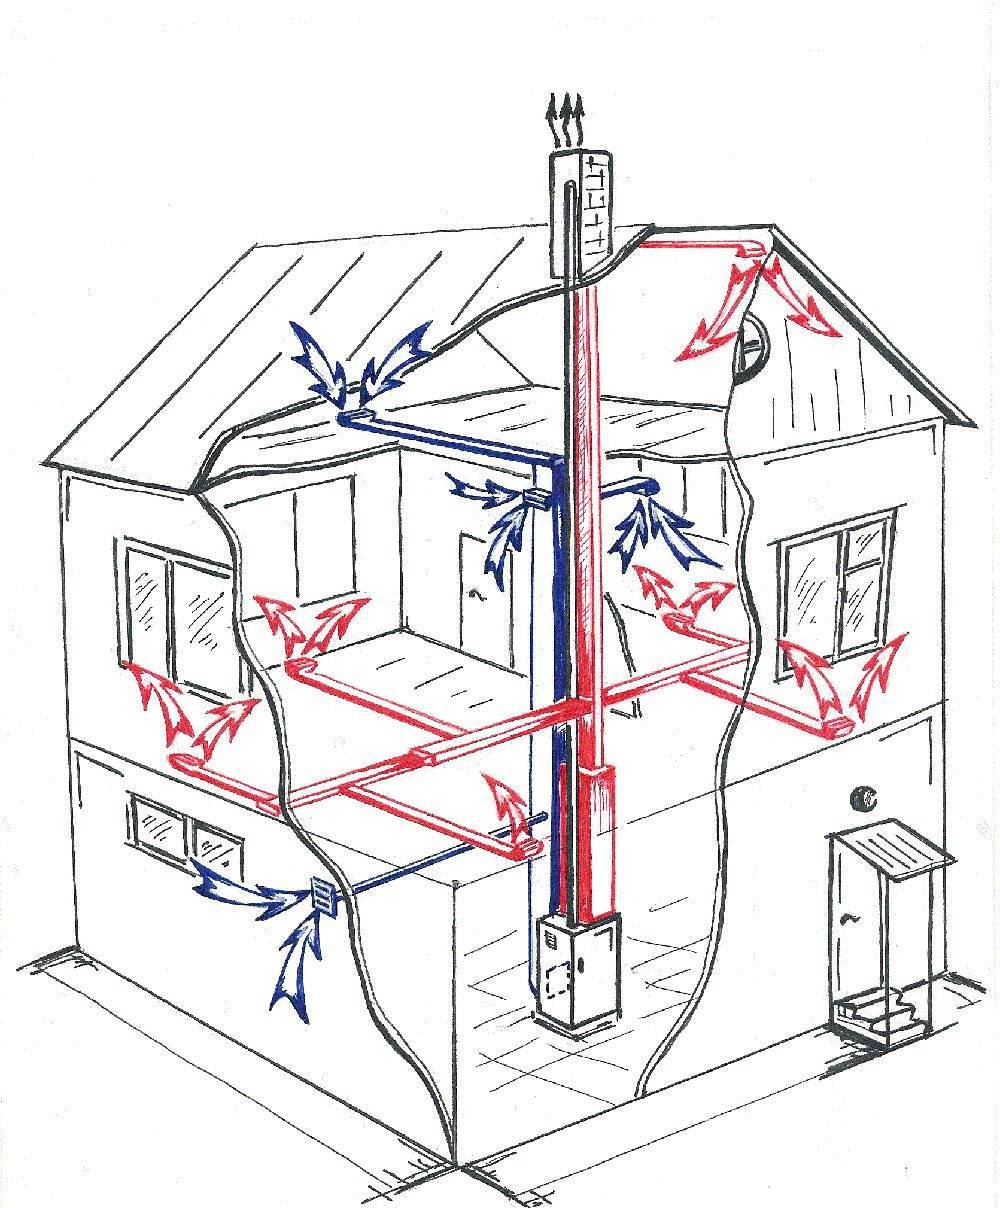 Как сделать воздушное отопление частного дома своими руками — схемы, фото и видео